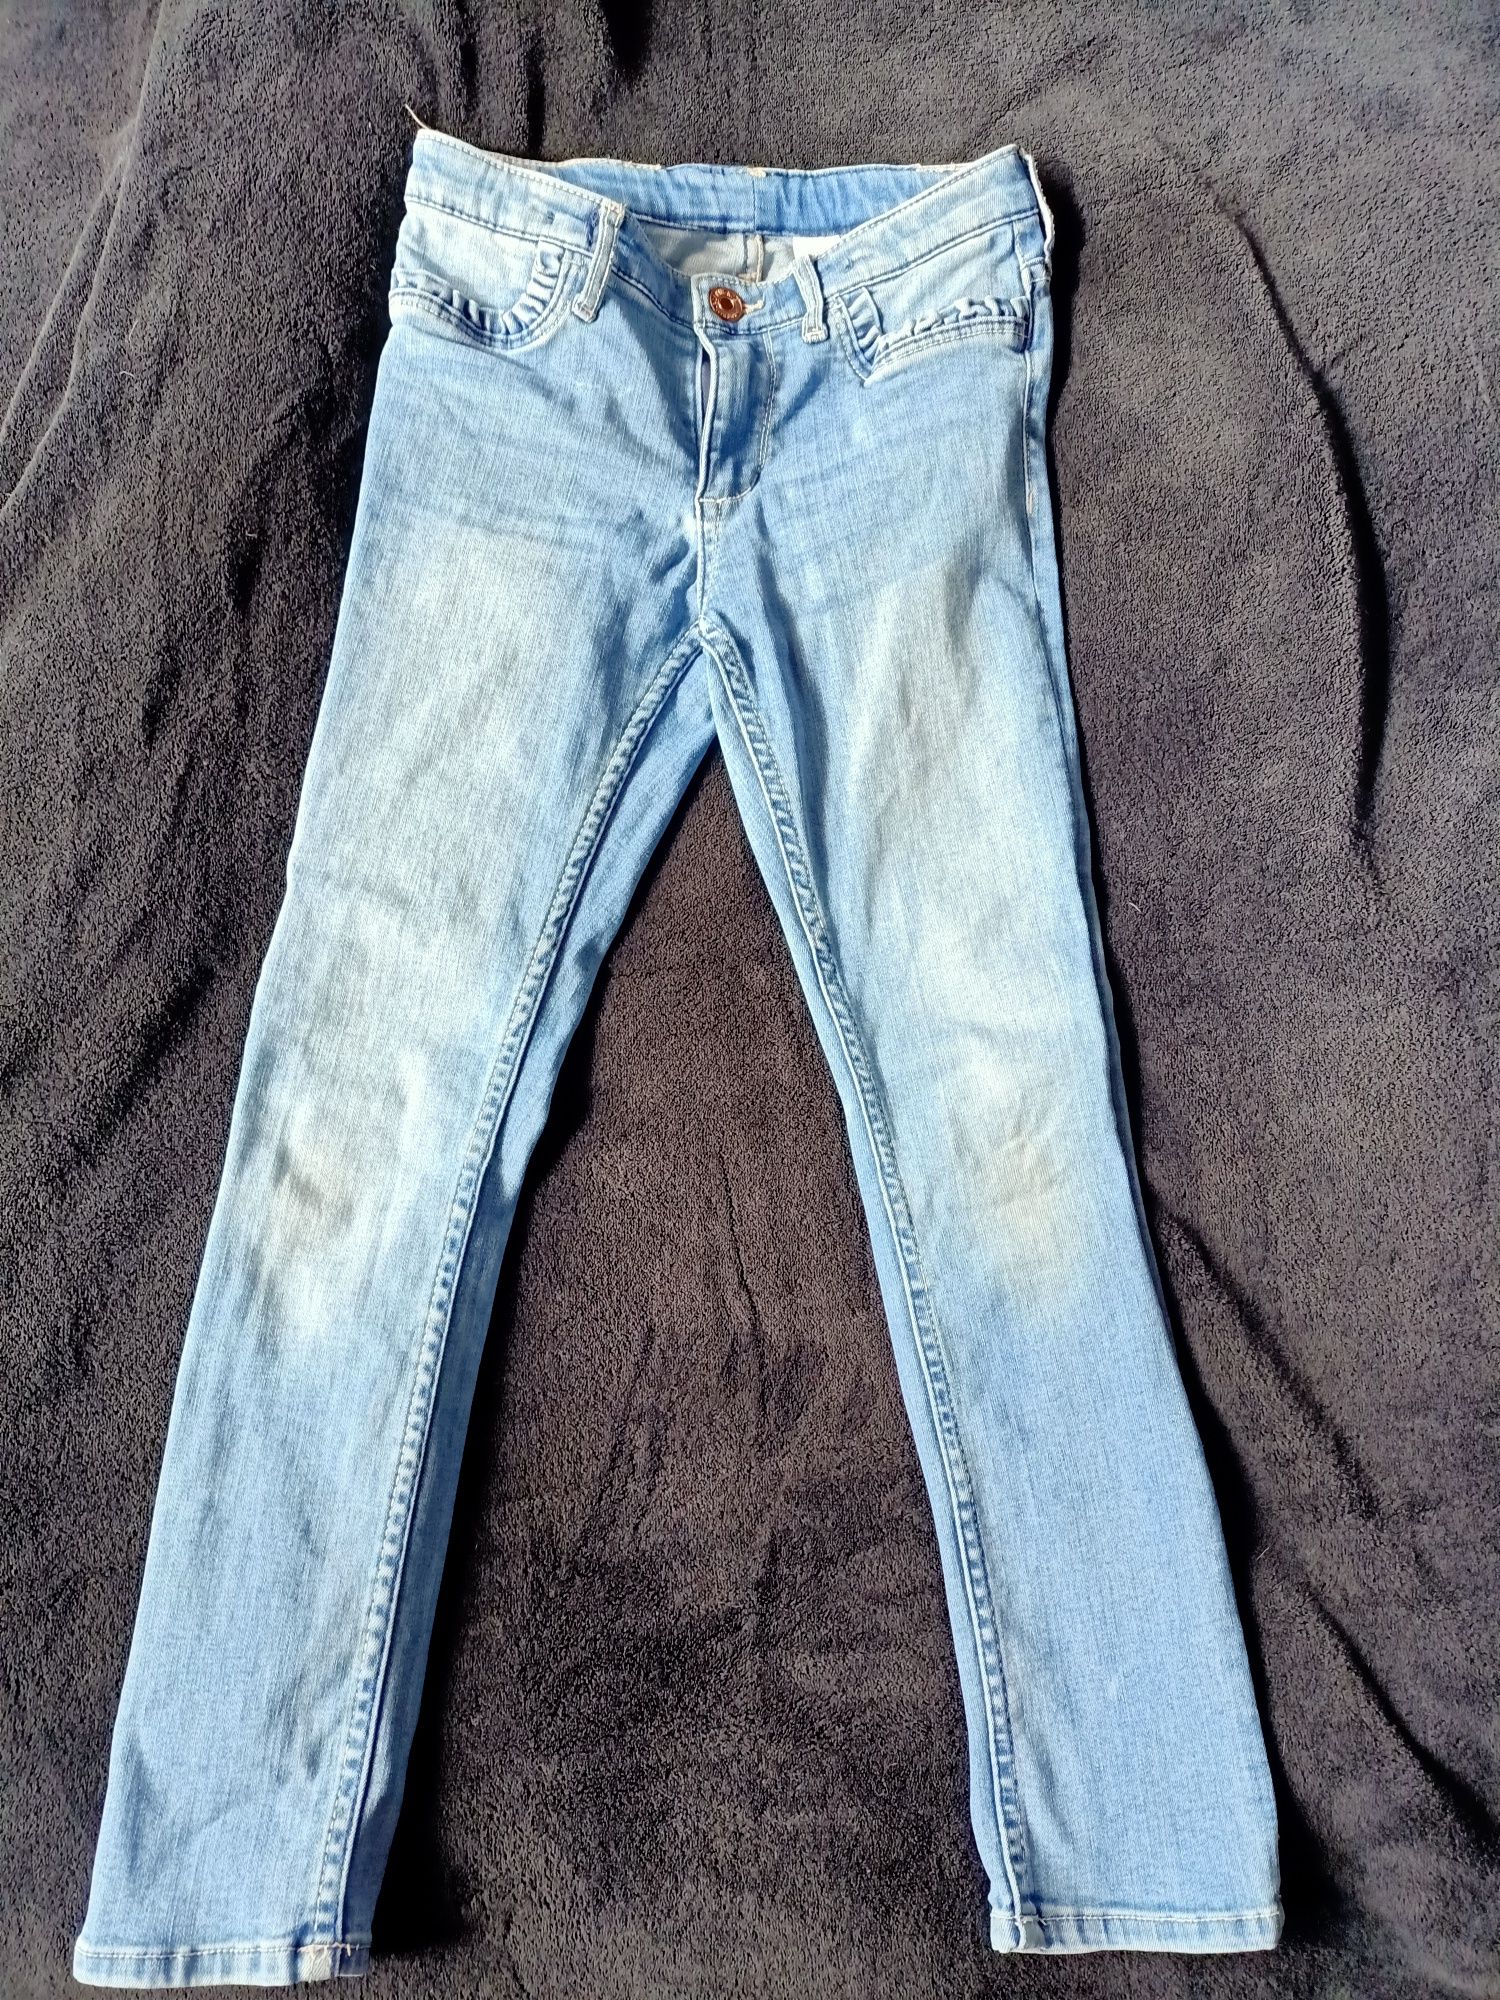 Spodnie jeansowe dziewczęce H&M r.128